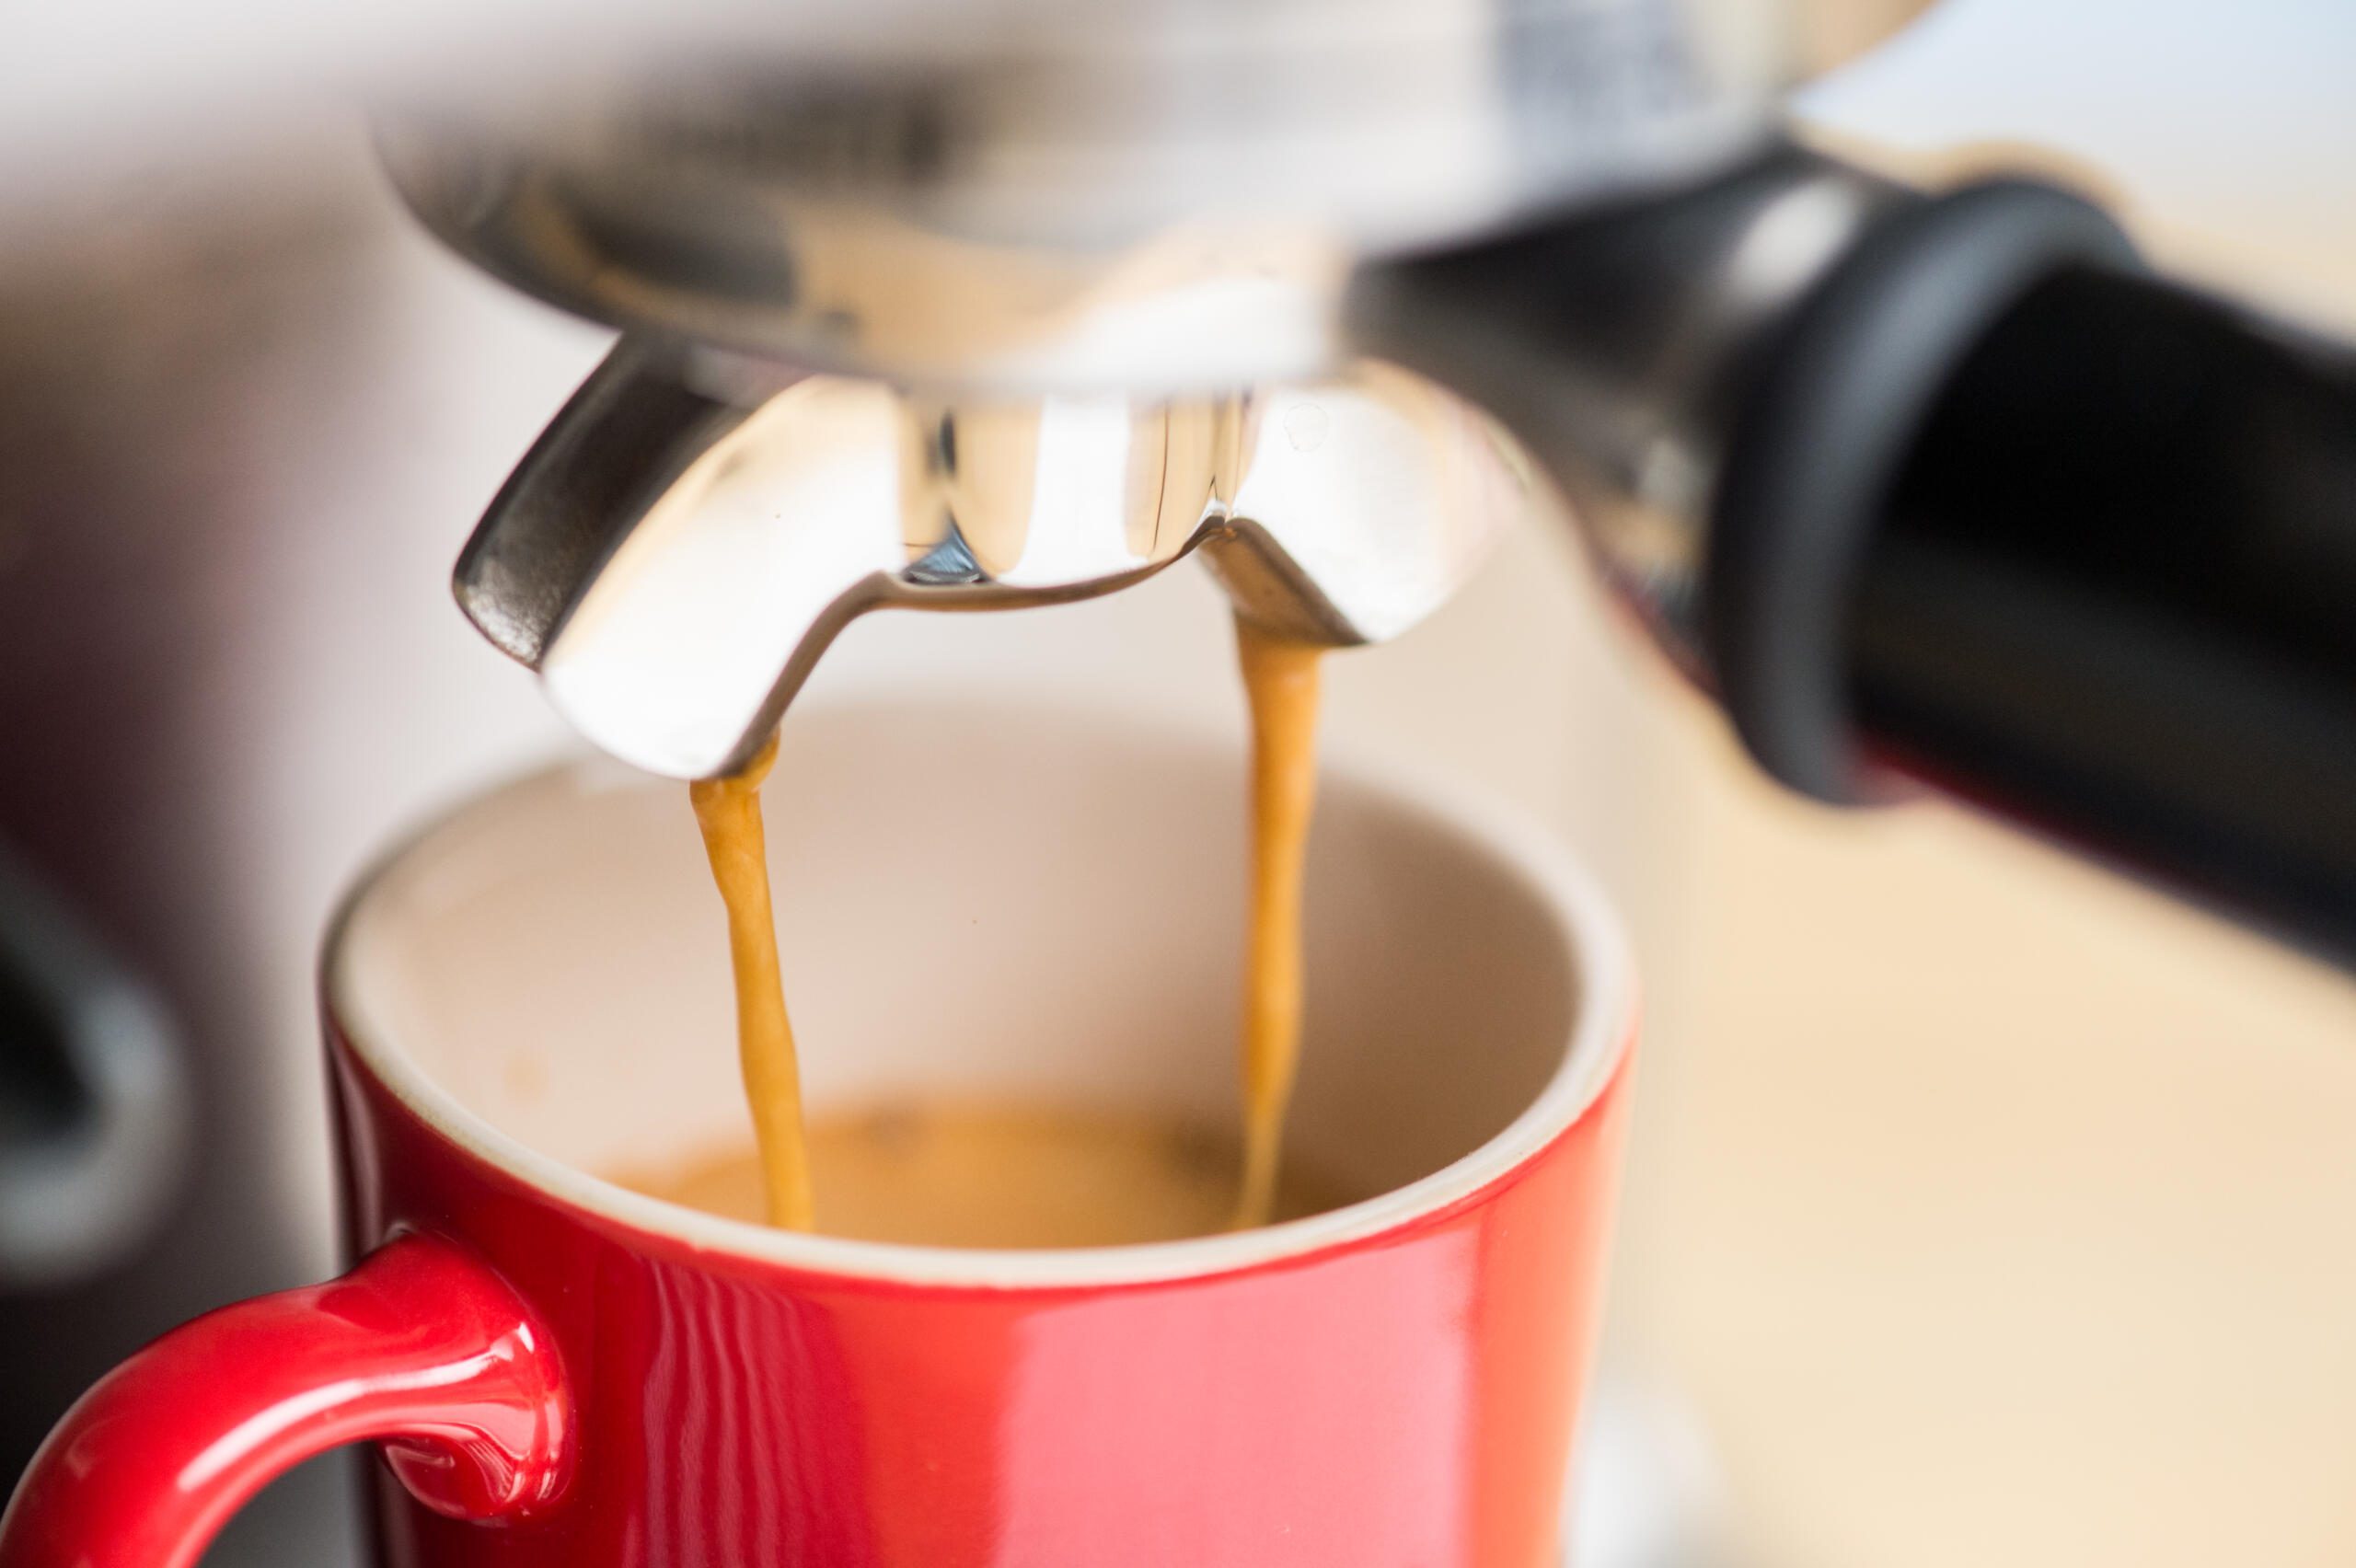 Espresso shot pouring into a red mug